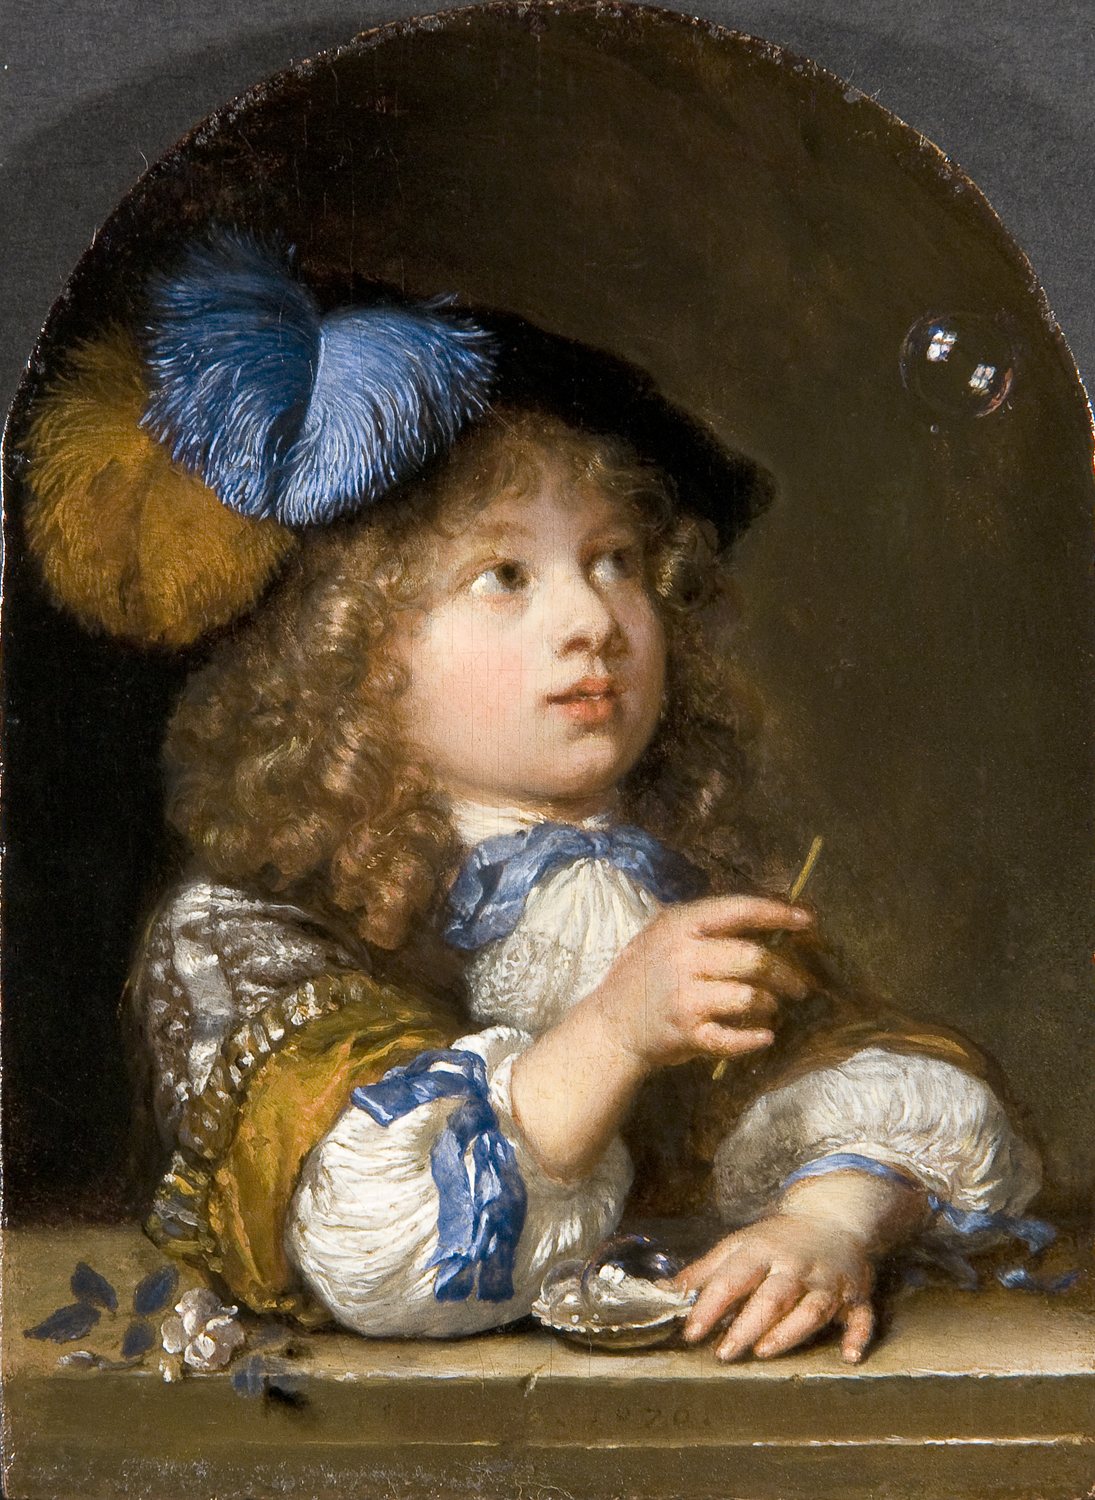 비눗방울 부는 소년  by Caspar Netscher - 1670 - 11.2 x 8.4 cm 